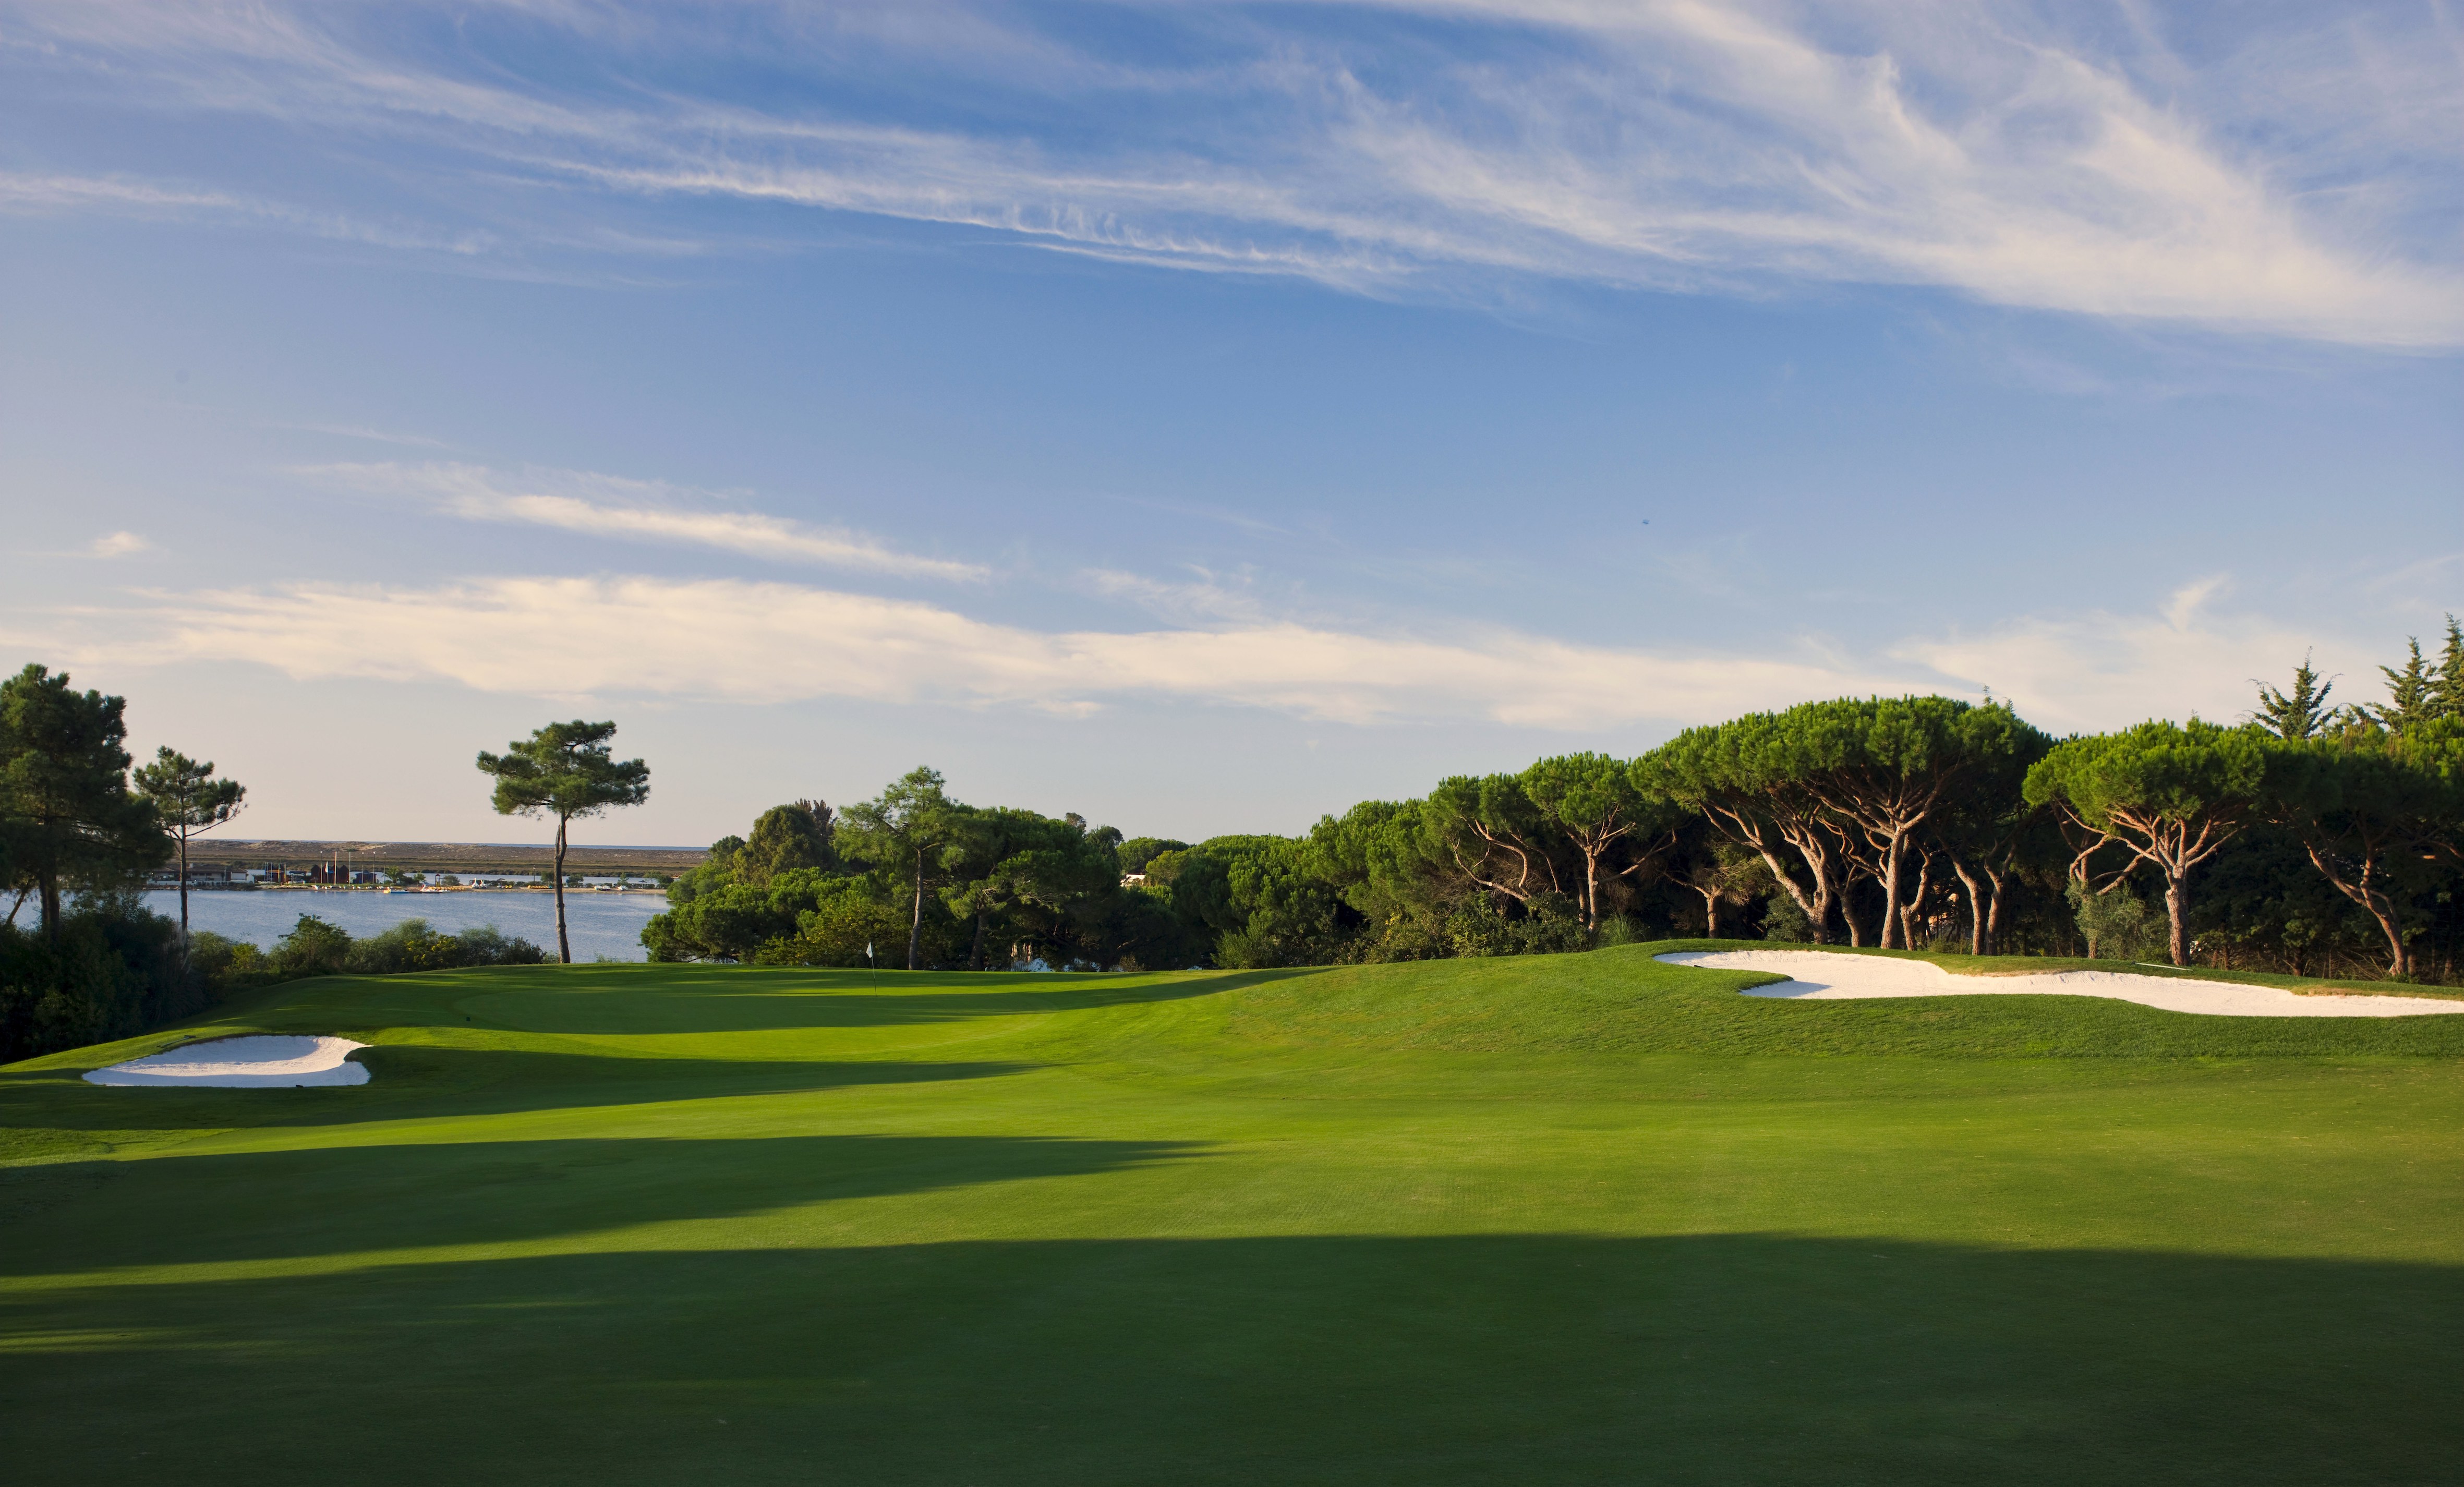 Quinta do Lago golf course in the Algarve, Portugal